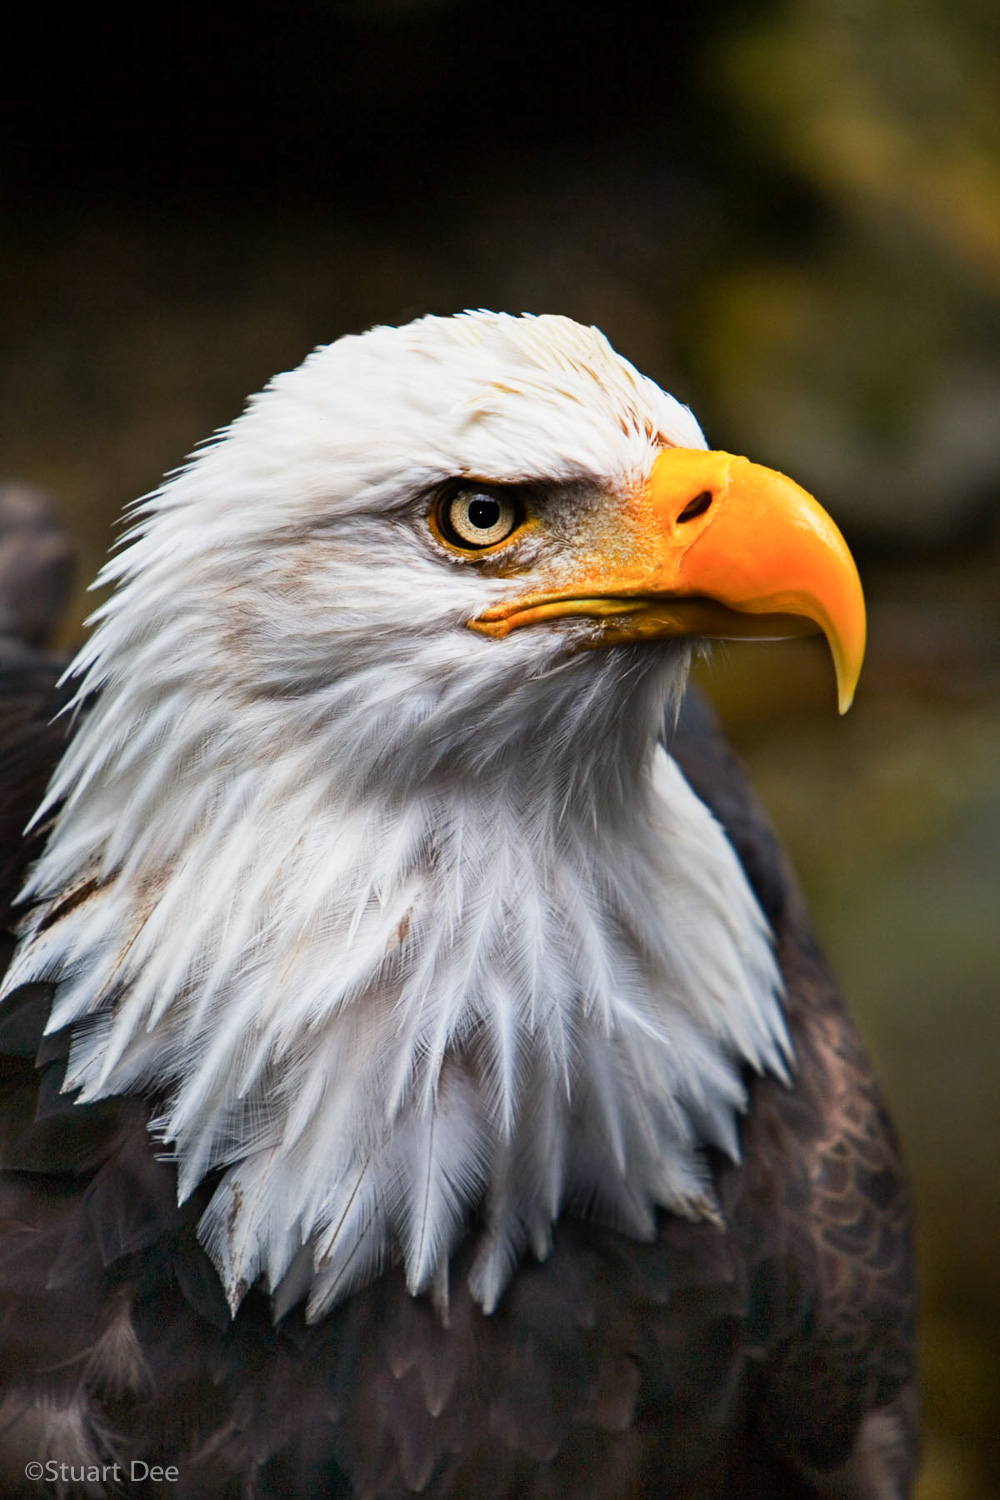  Bald eagle, Ketchikan, Alaska 